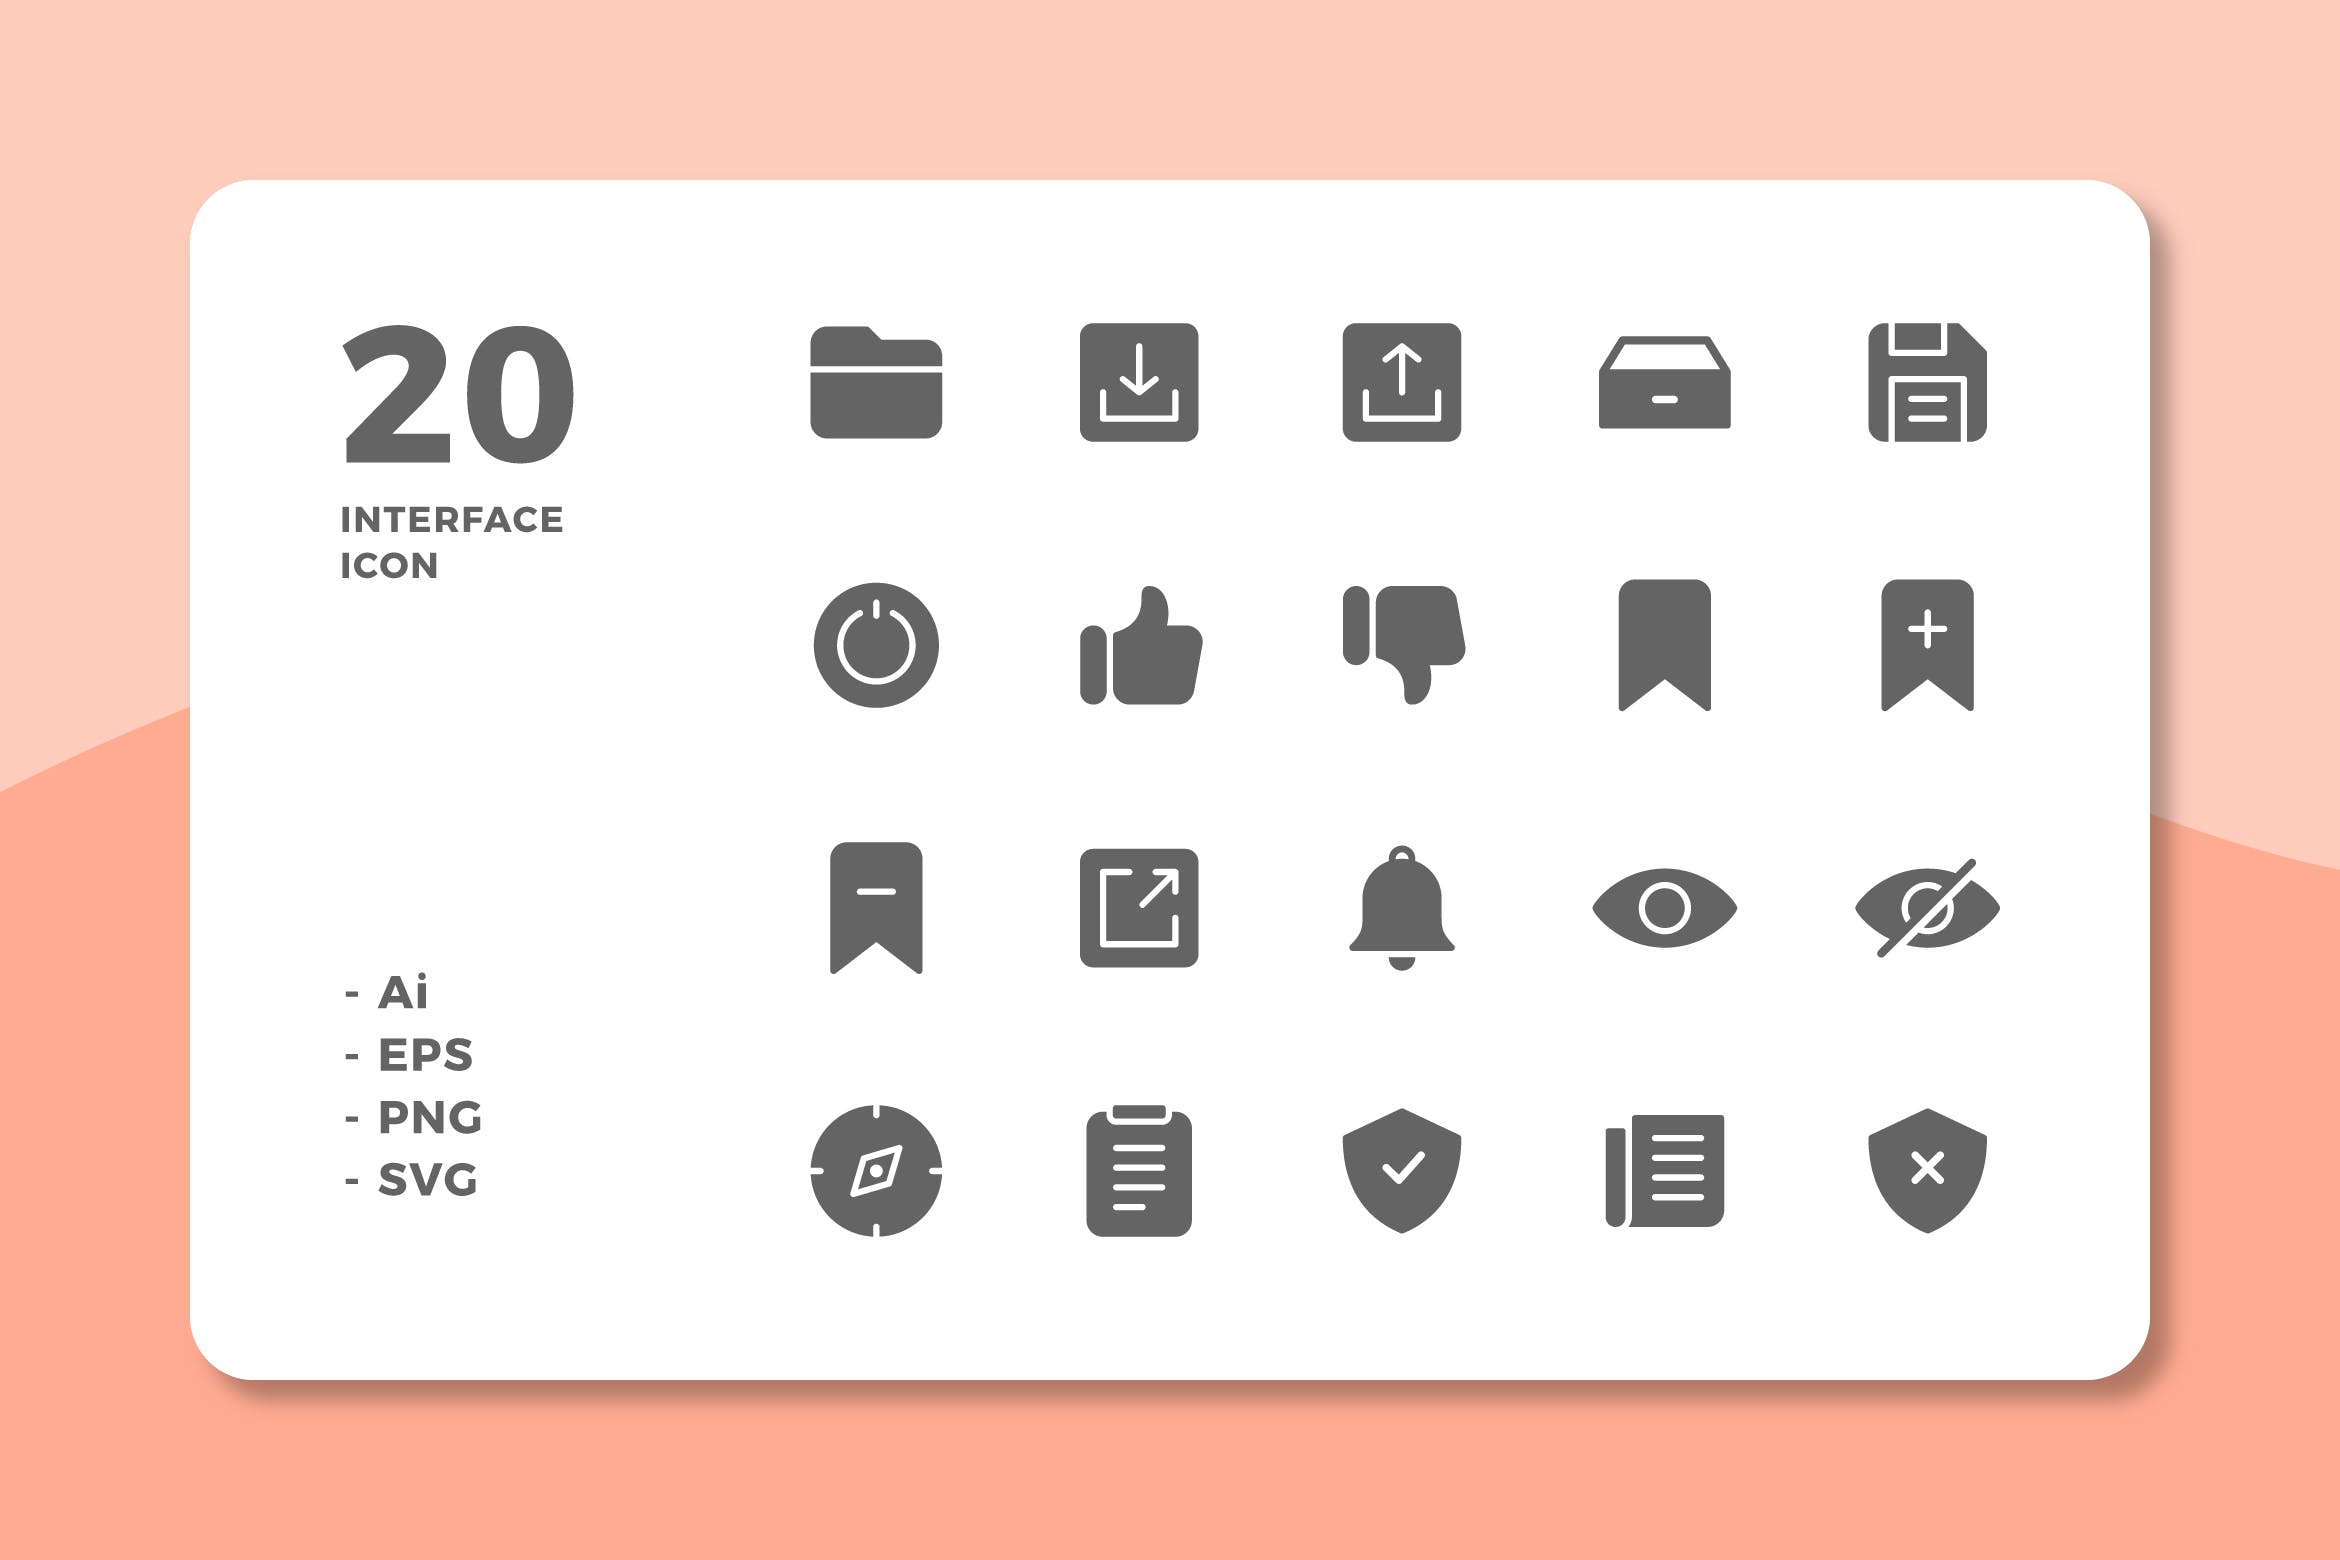 20枚UI界面设计APP操作选项非凡图库精选图标v3 20 Interface Icons Vol.3 (Solid)插图